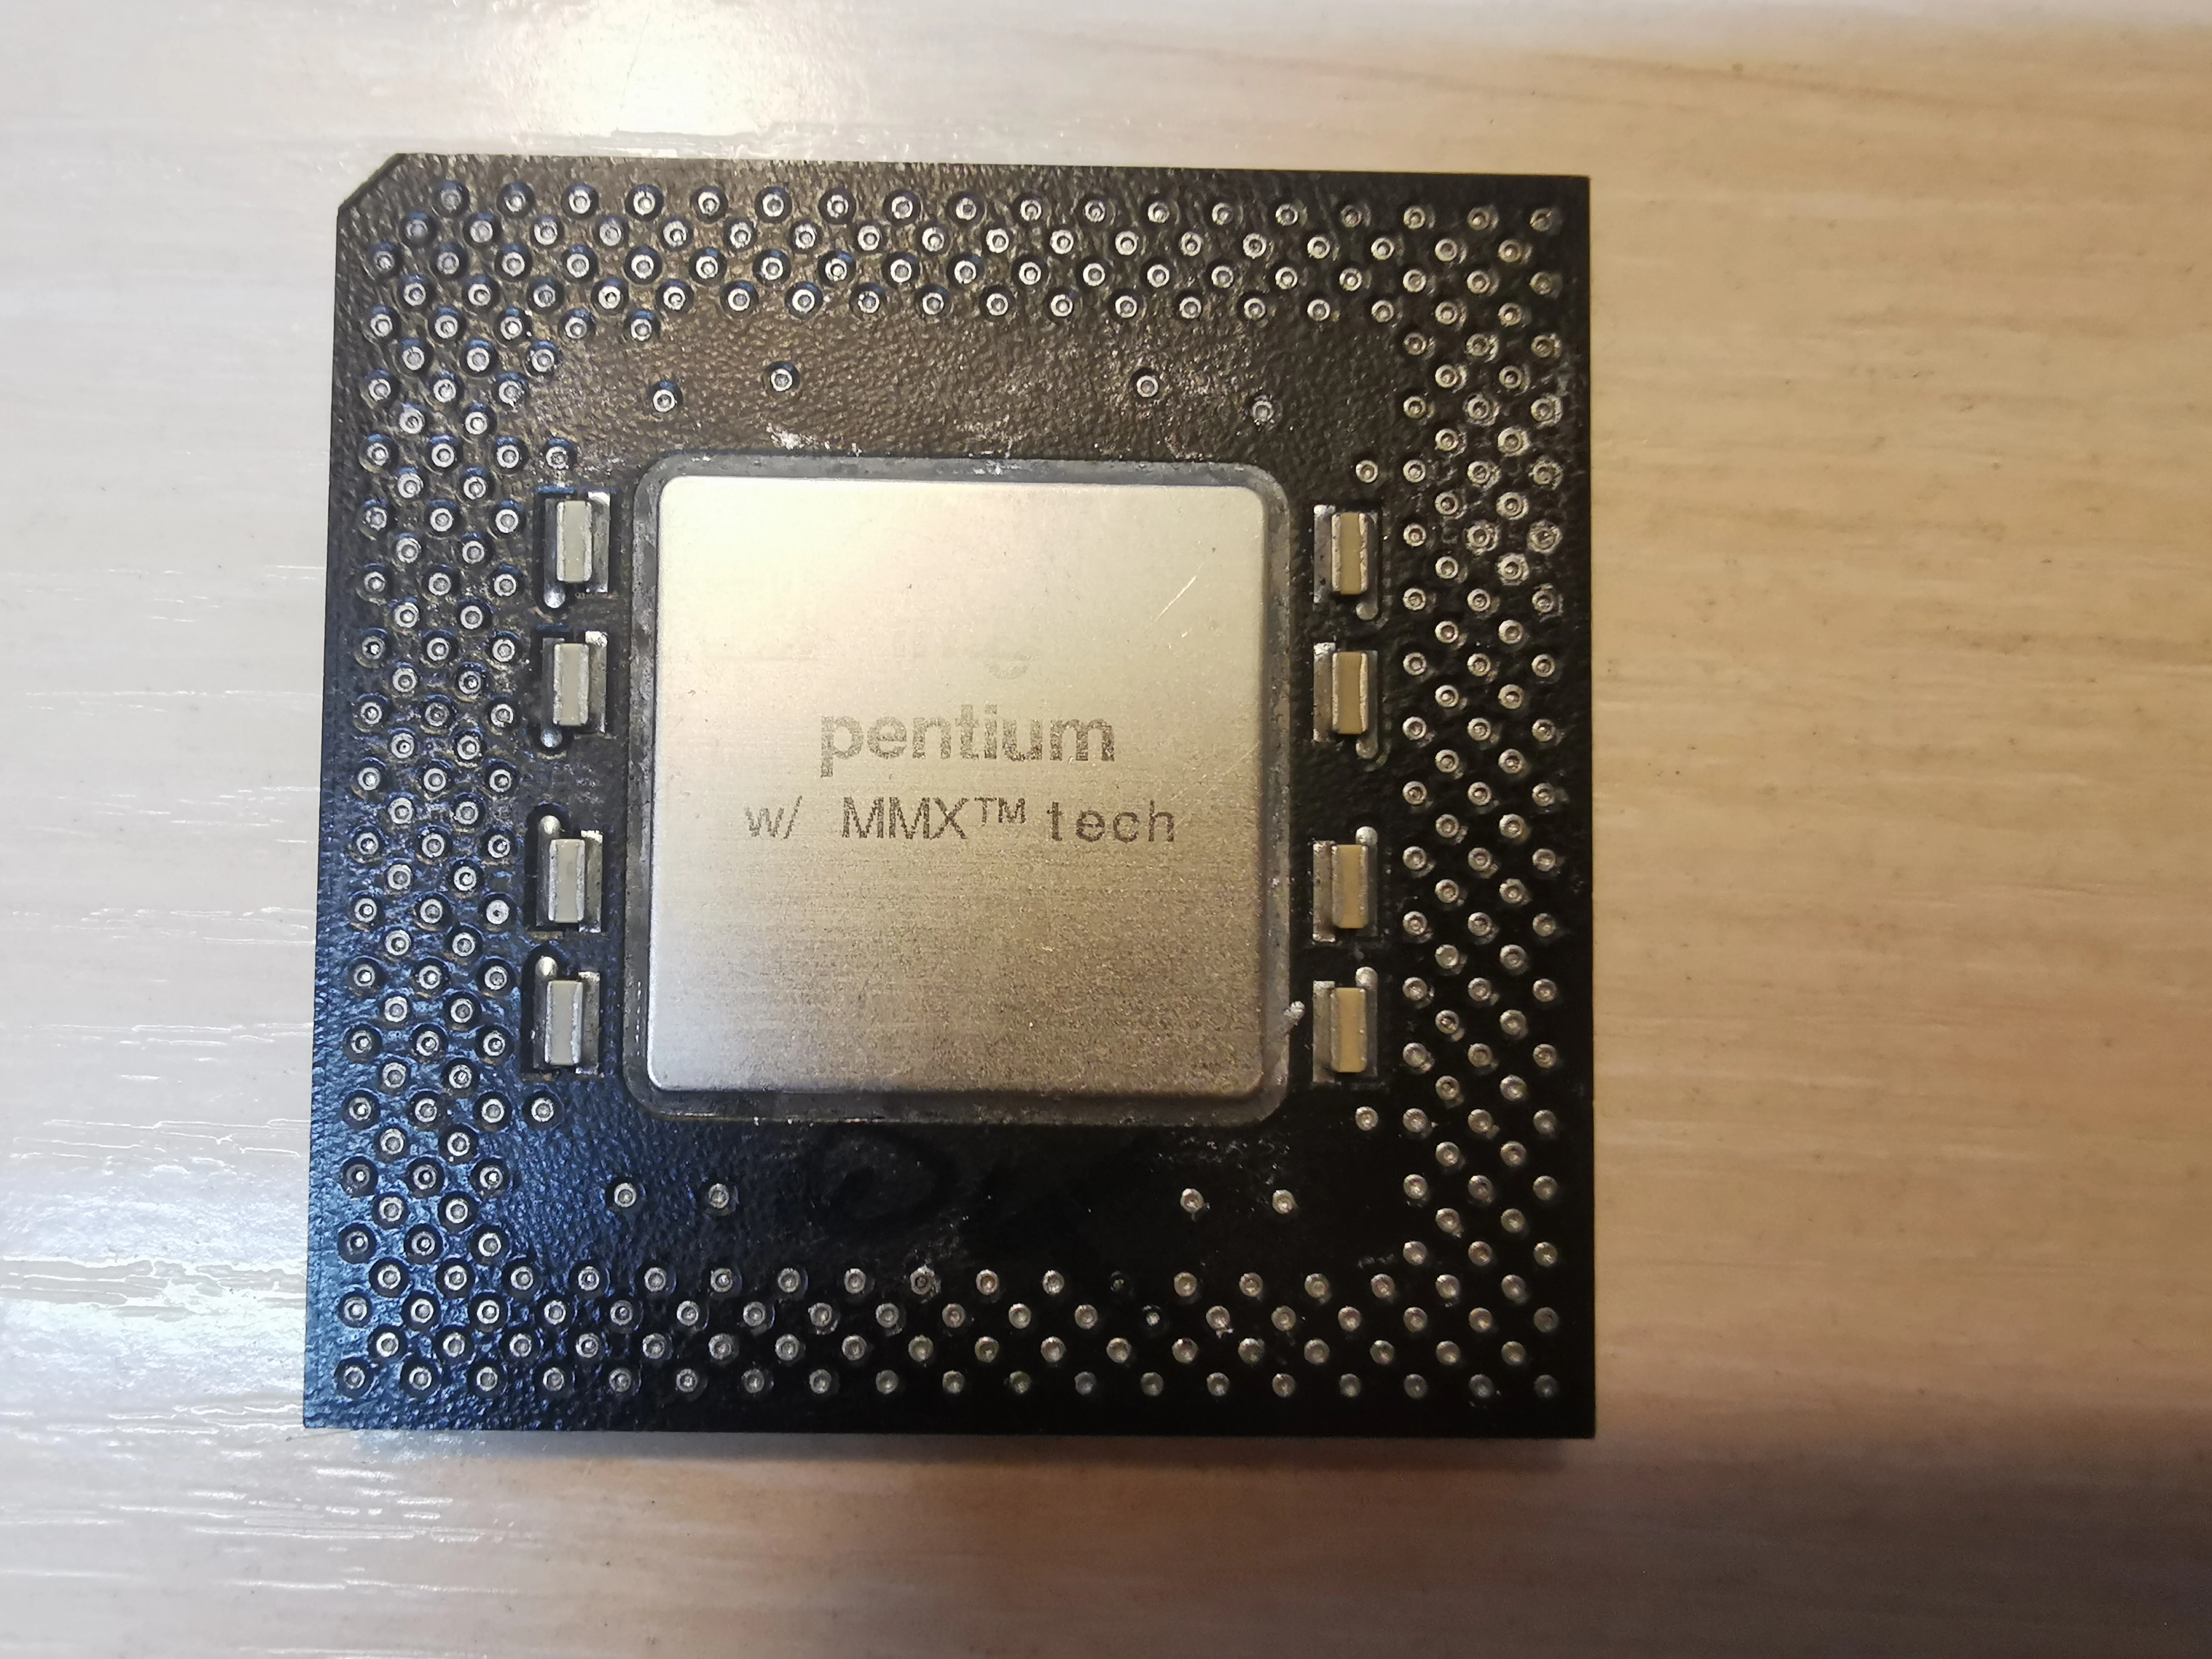 Cpu Intel Pentium Mmx 166 Mhz (sl27k, Sl23x, Sl27h), Socket 7 Processor -  Cpus - AliExpress